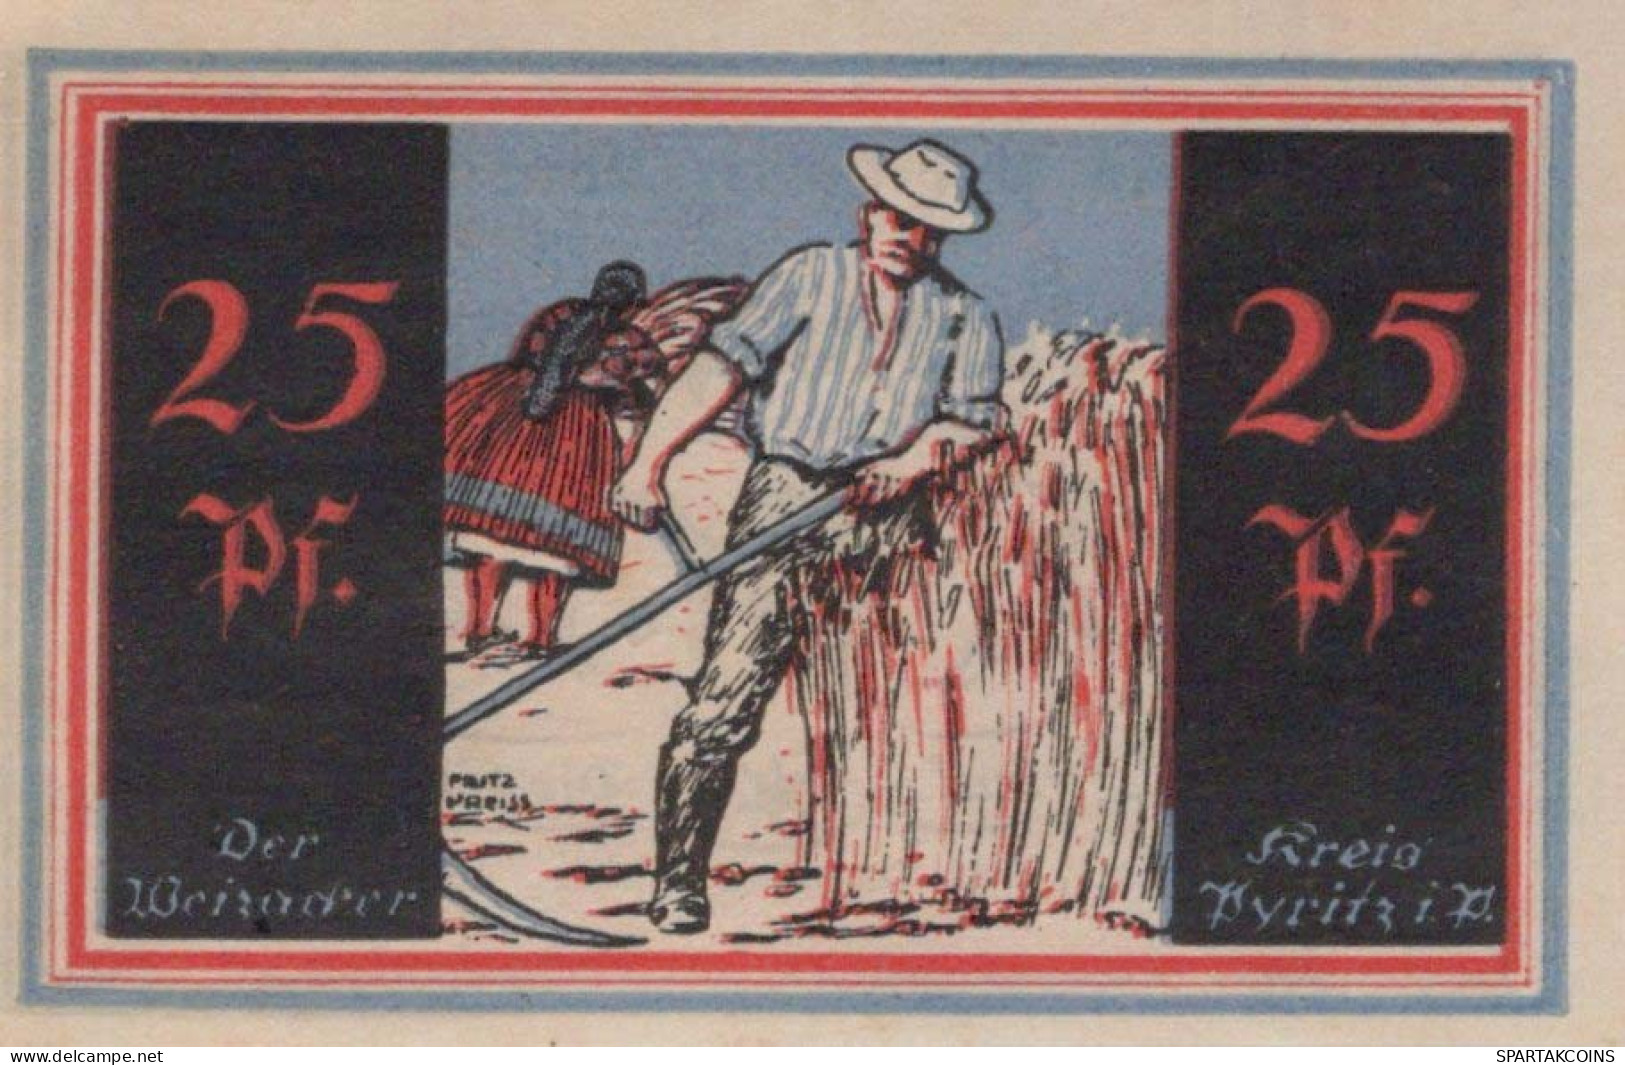 25 PFENNIG 1921 Stadt PYRITZ Pomerania UNC DEUTSCHLAND Notgeld Banknote #PB789 - [11] Emissions Locales